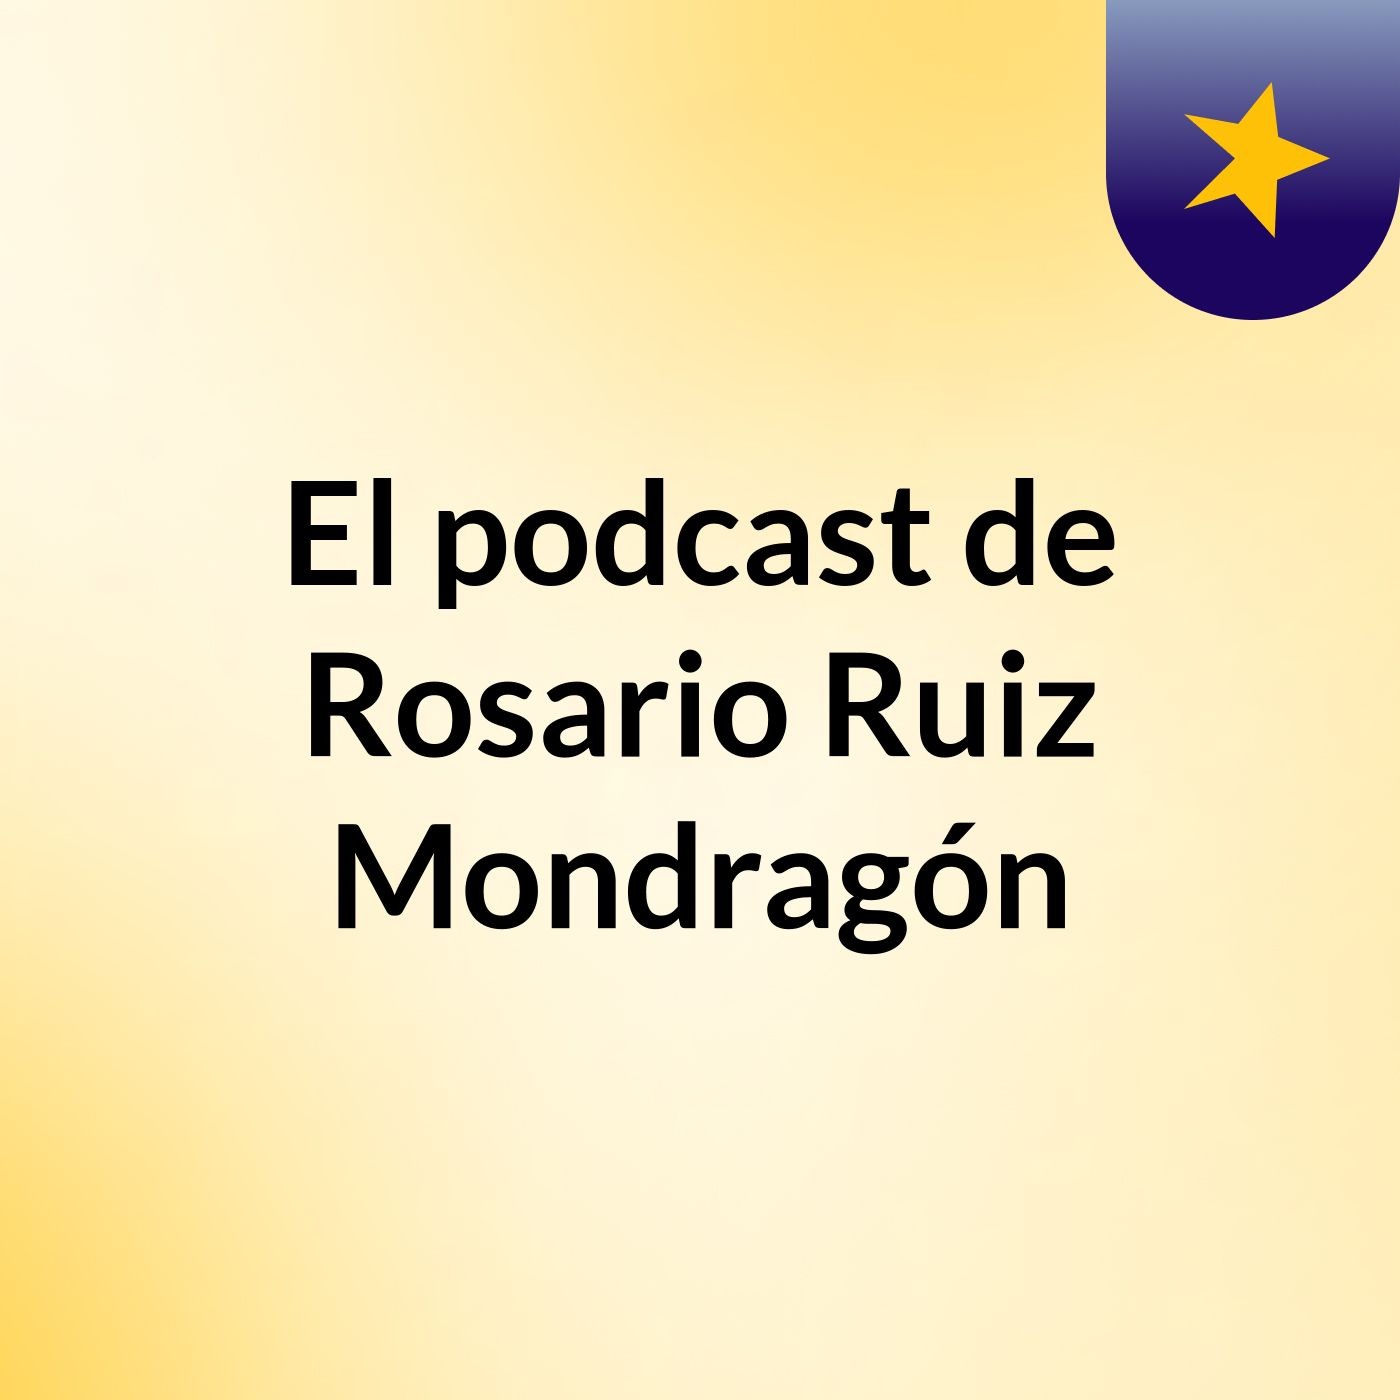 El podcast de Rosario Ruiz Mondragón